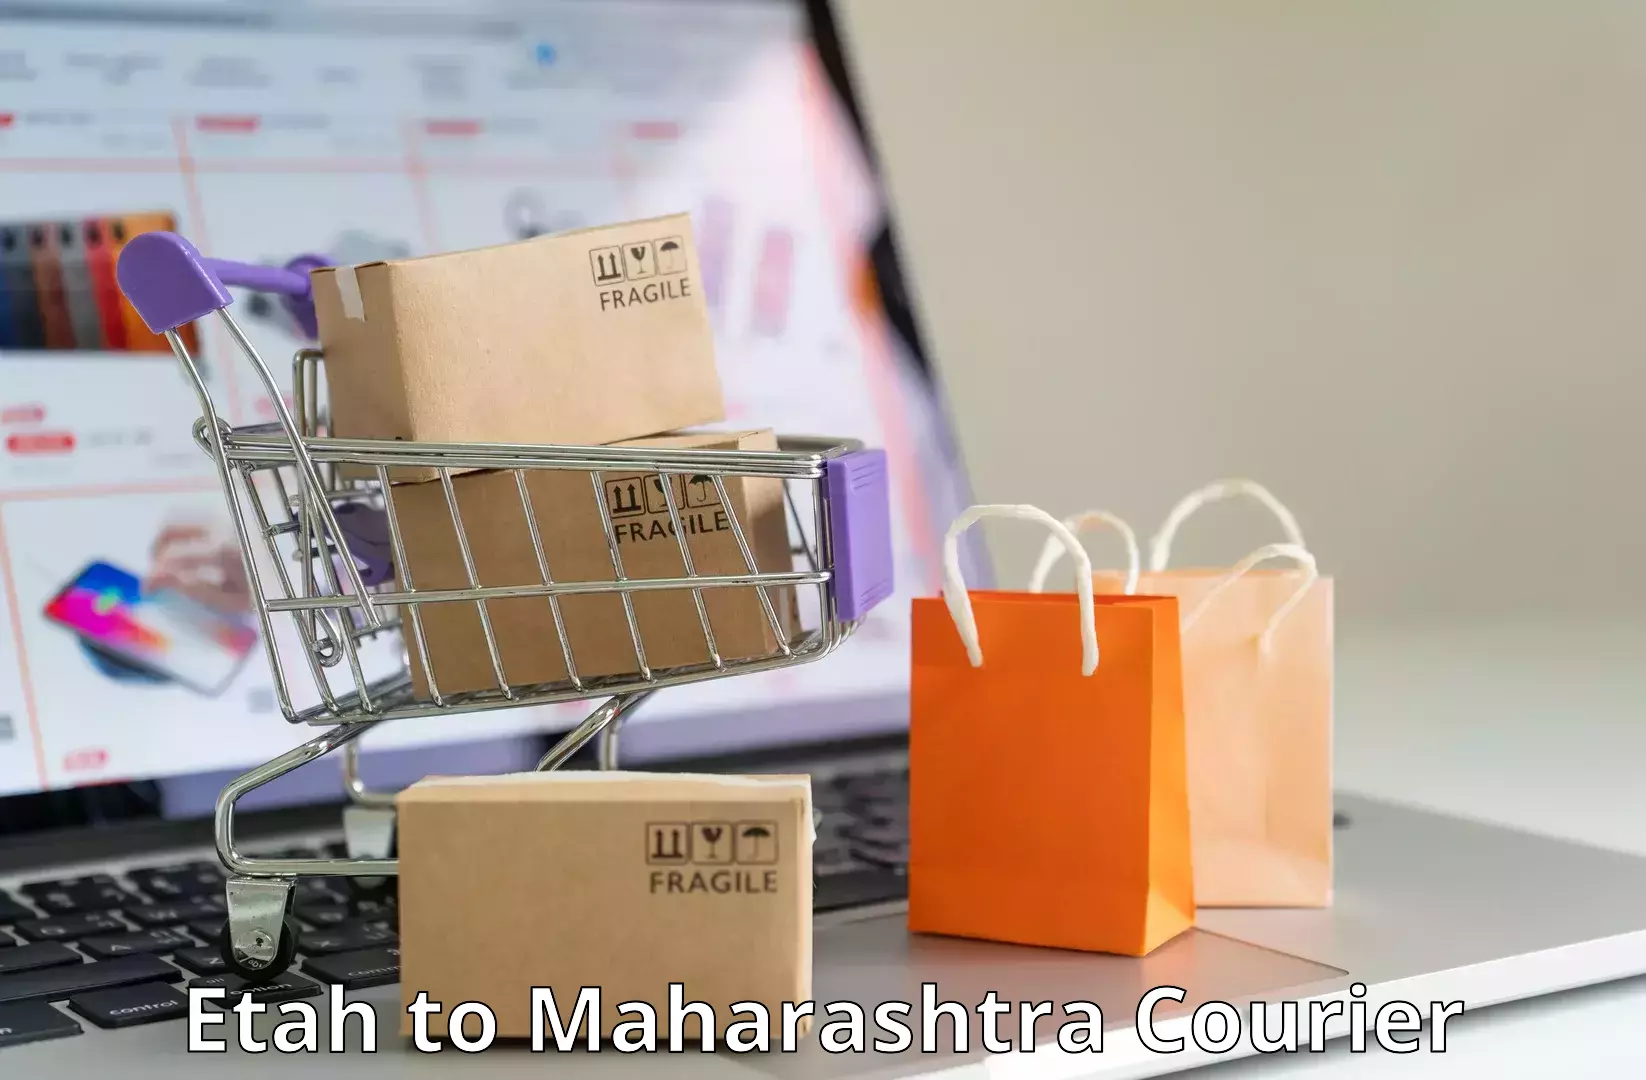 Discounted shipping Etah to Khandala Pune